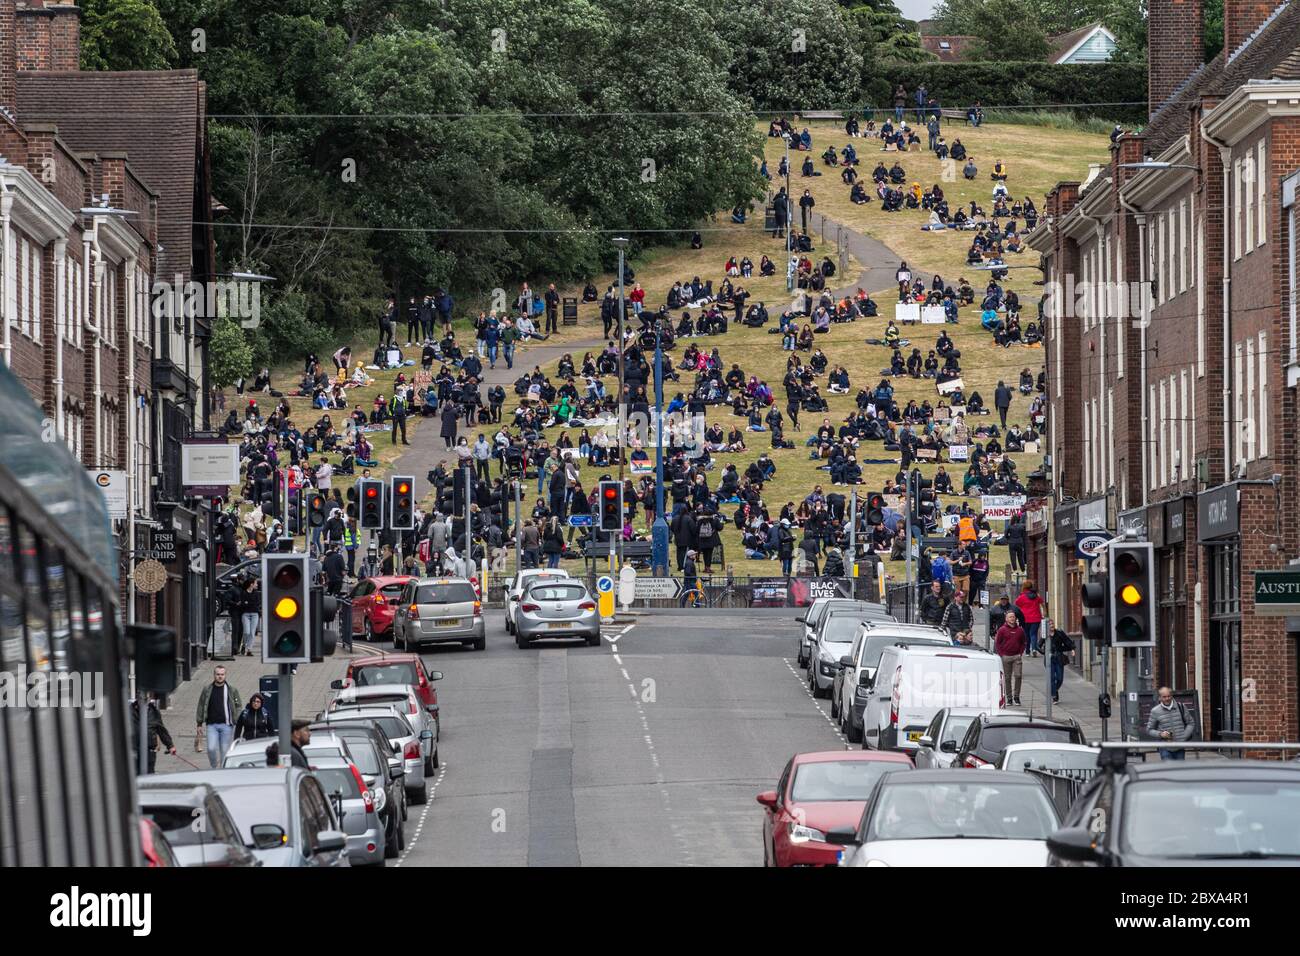 Demonstranten und Demonstranten versammeln sich zu einem Protest gegen Black Lives Matter und einer Kundgebung in Hitchin, Hertfordshire, Großbritannien Stockfoto